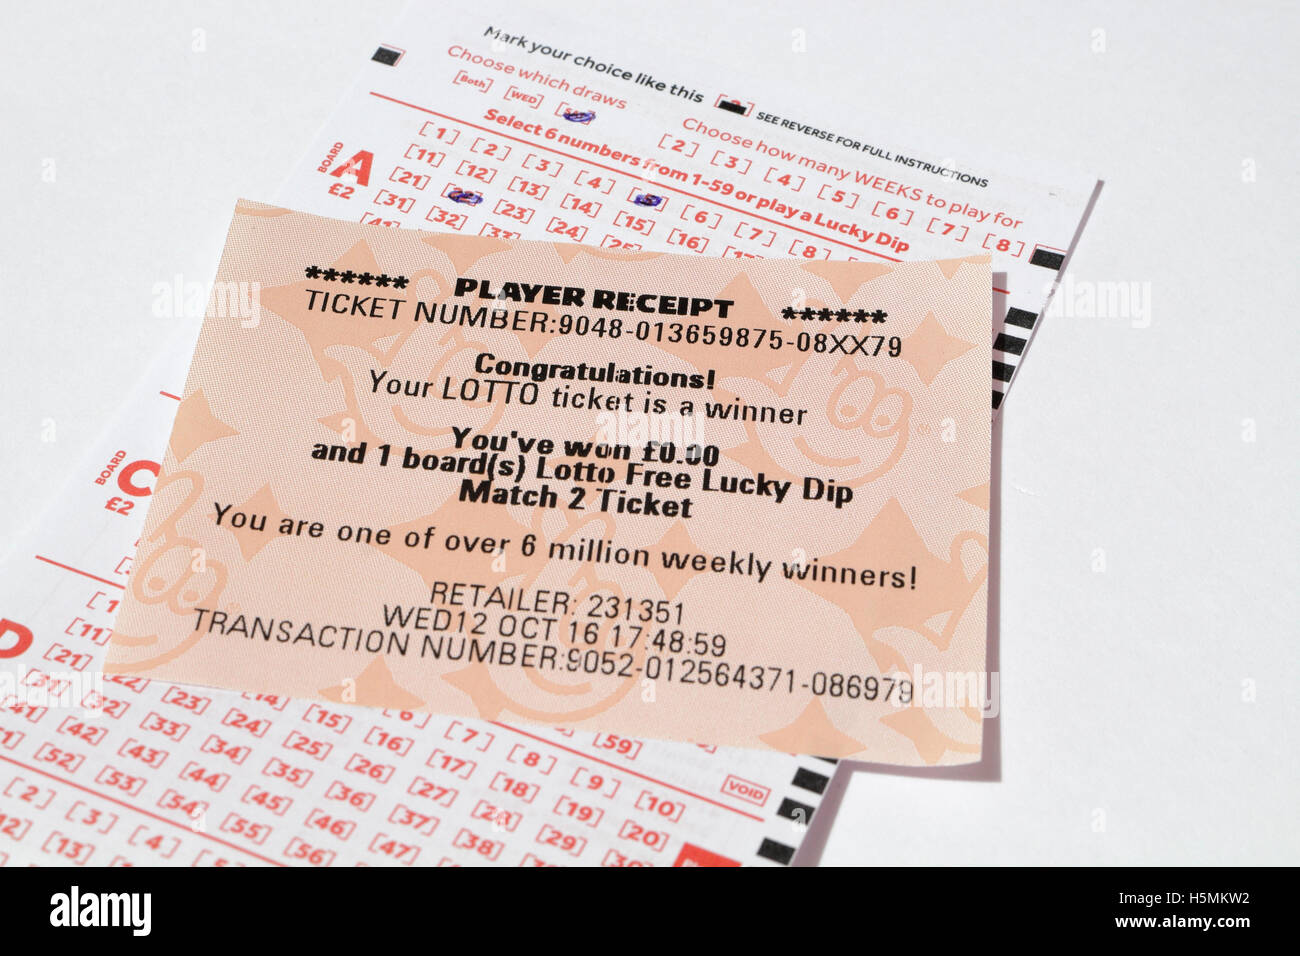 UK Lotto winner receipt Stock Photo